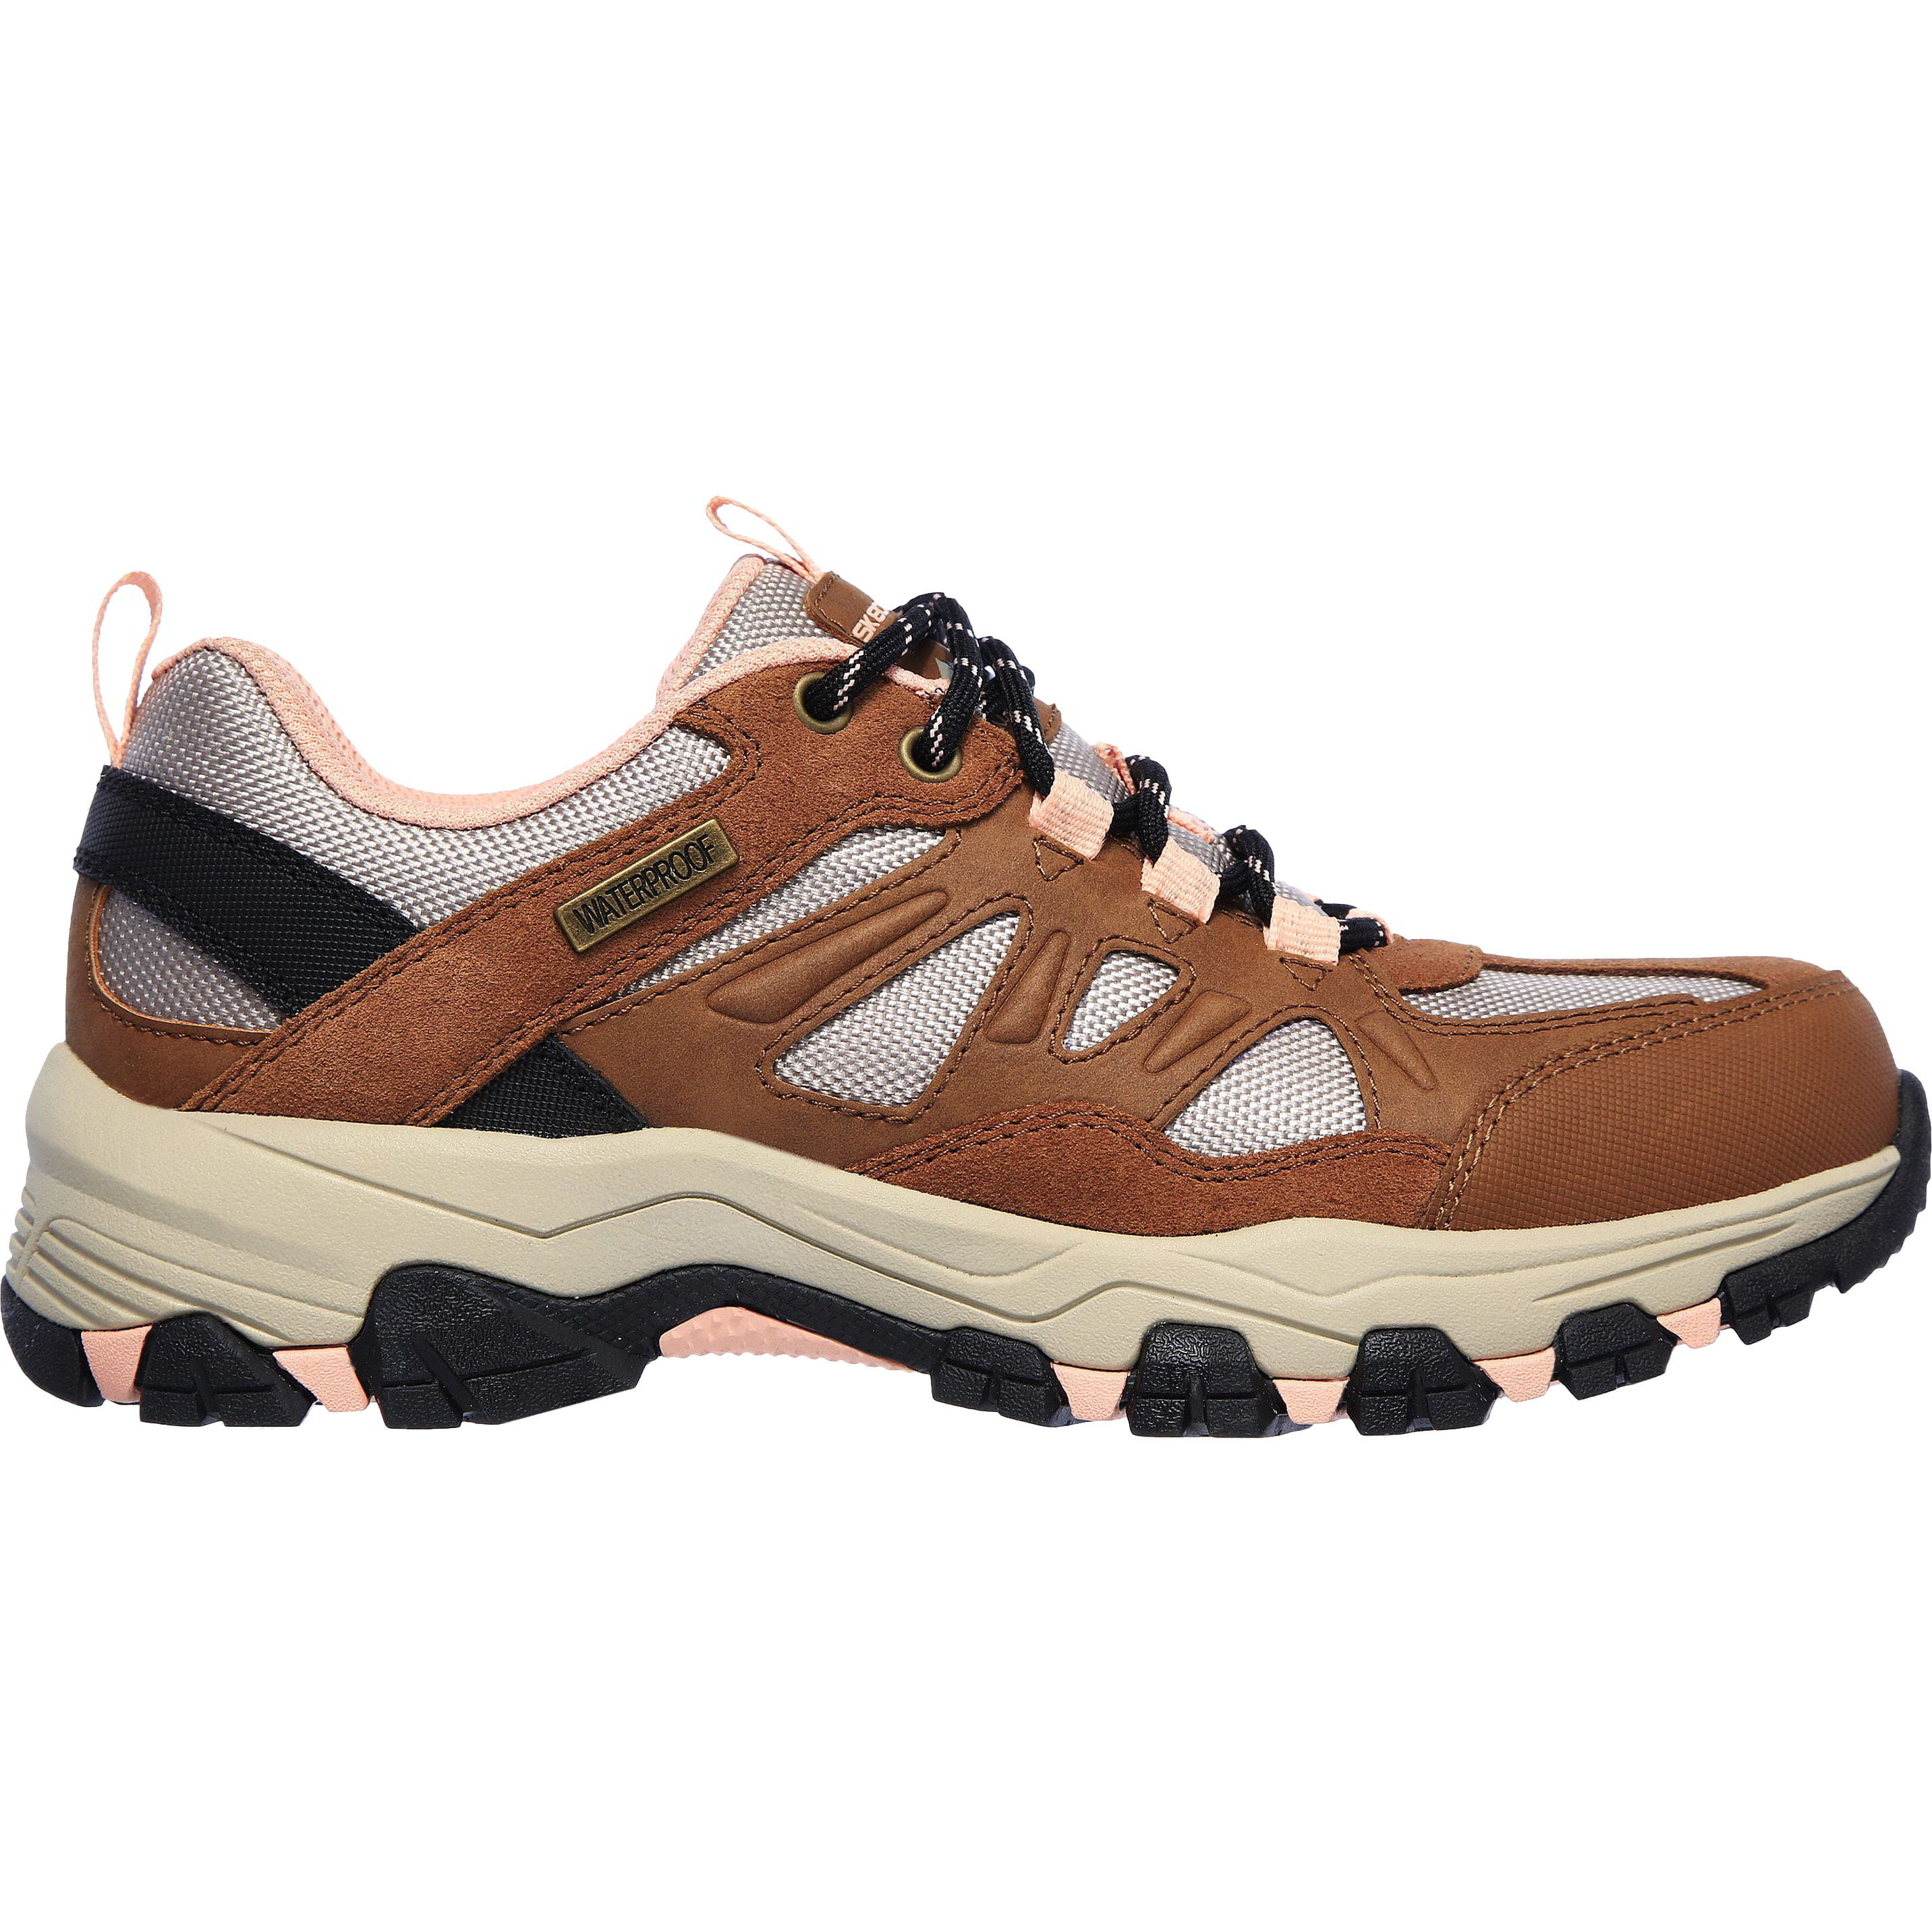 Skechers Womens Selment West Highland Waterproof Walking Shoes Trainers - UK 5.5 Brown 2951